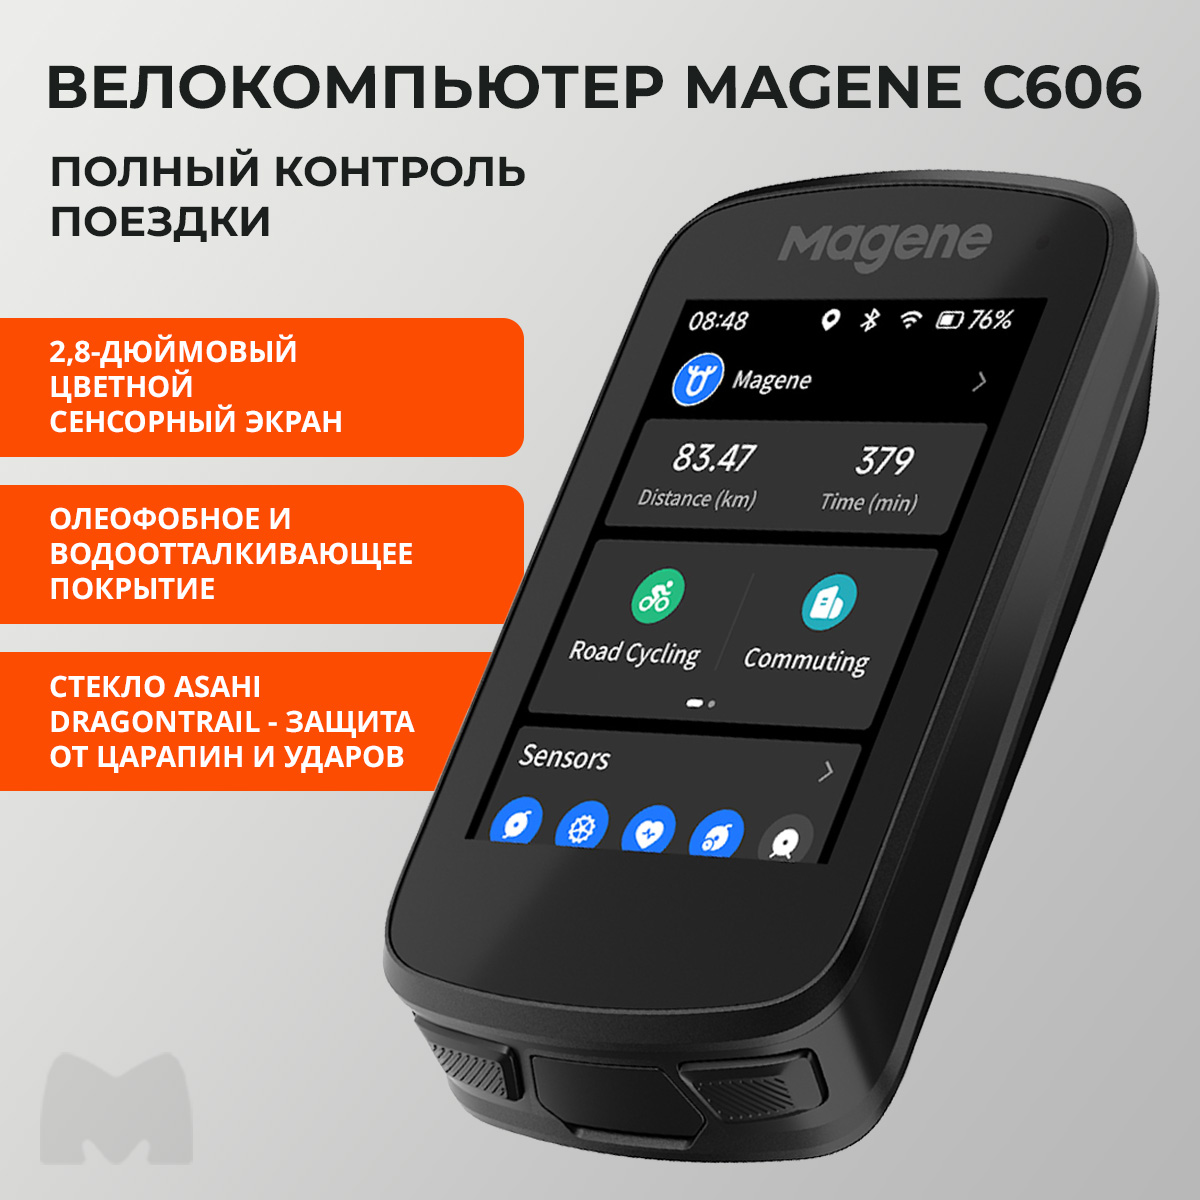 Беспроводной GPS велокомпьютер Magene C606 цветной, сенсорный, WiFi, ANT+, Bluetooth